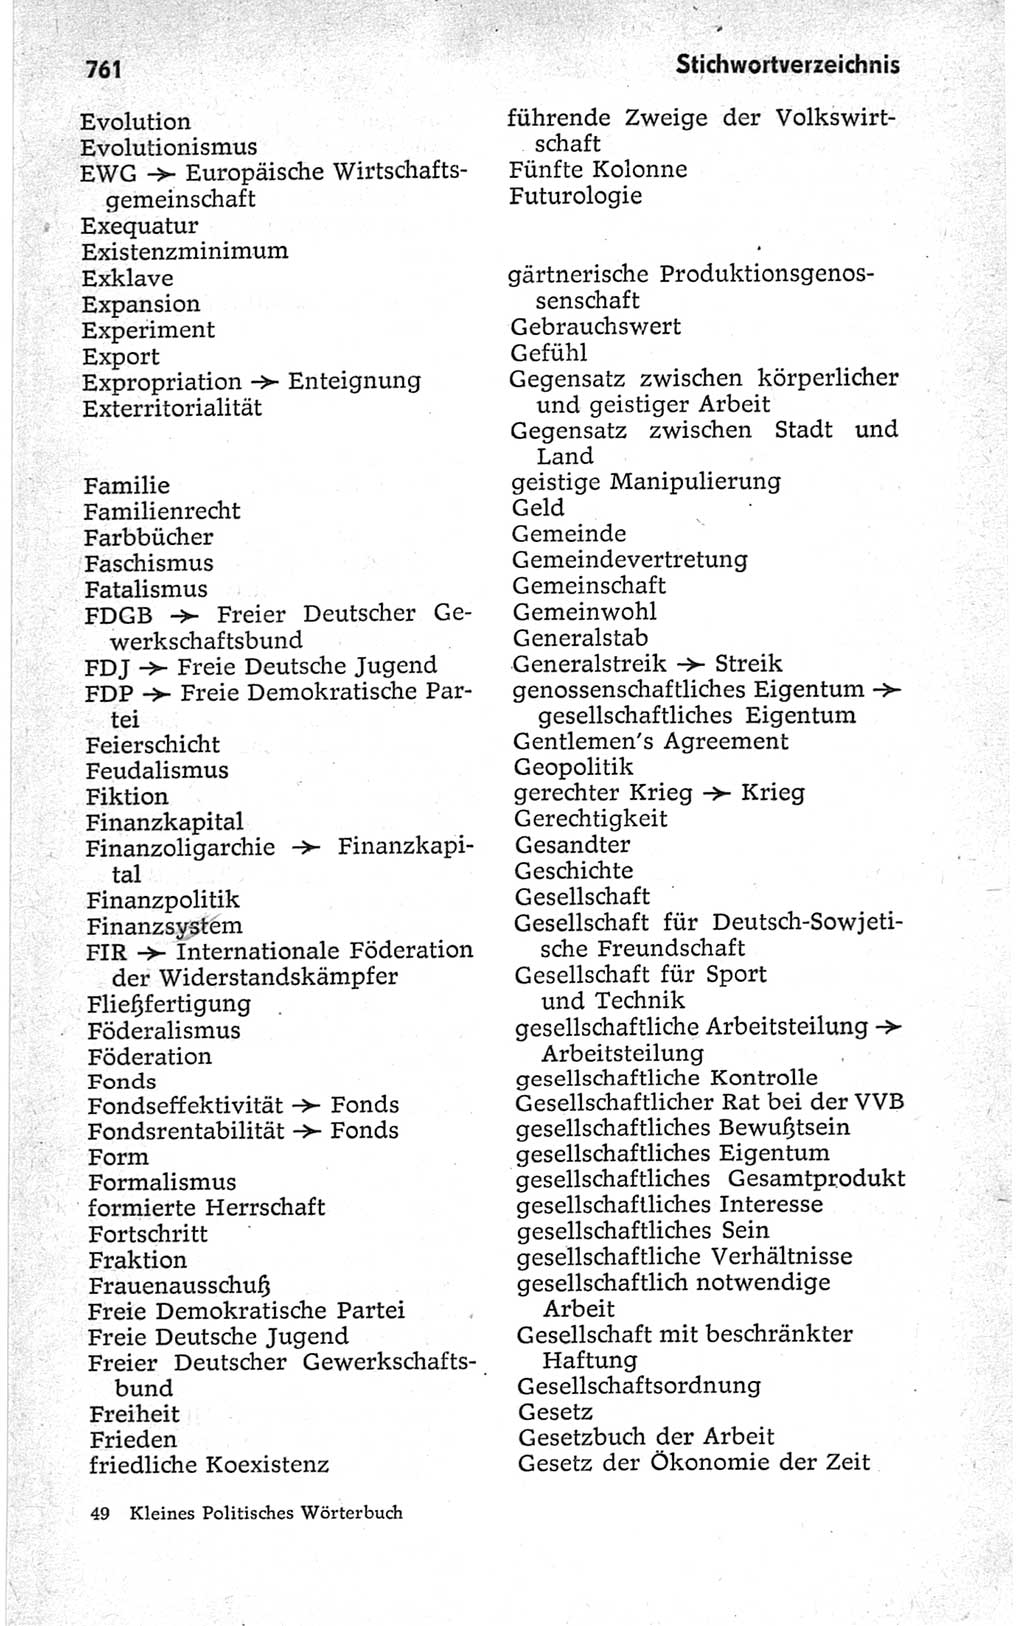 Kleines politisches Wörterbuch [Deutsche Demokratische Republik (DDR)] 1967, Seite 761 (Kl. pol. Wb. DDR 1967, S. 761)